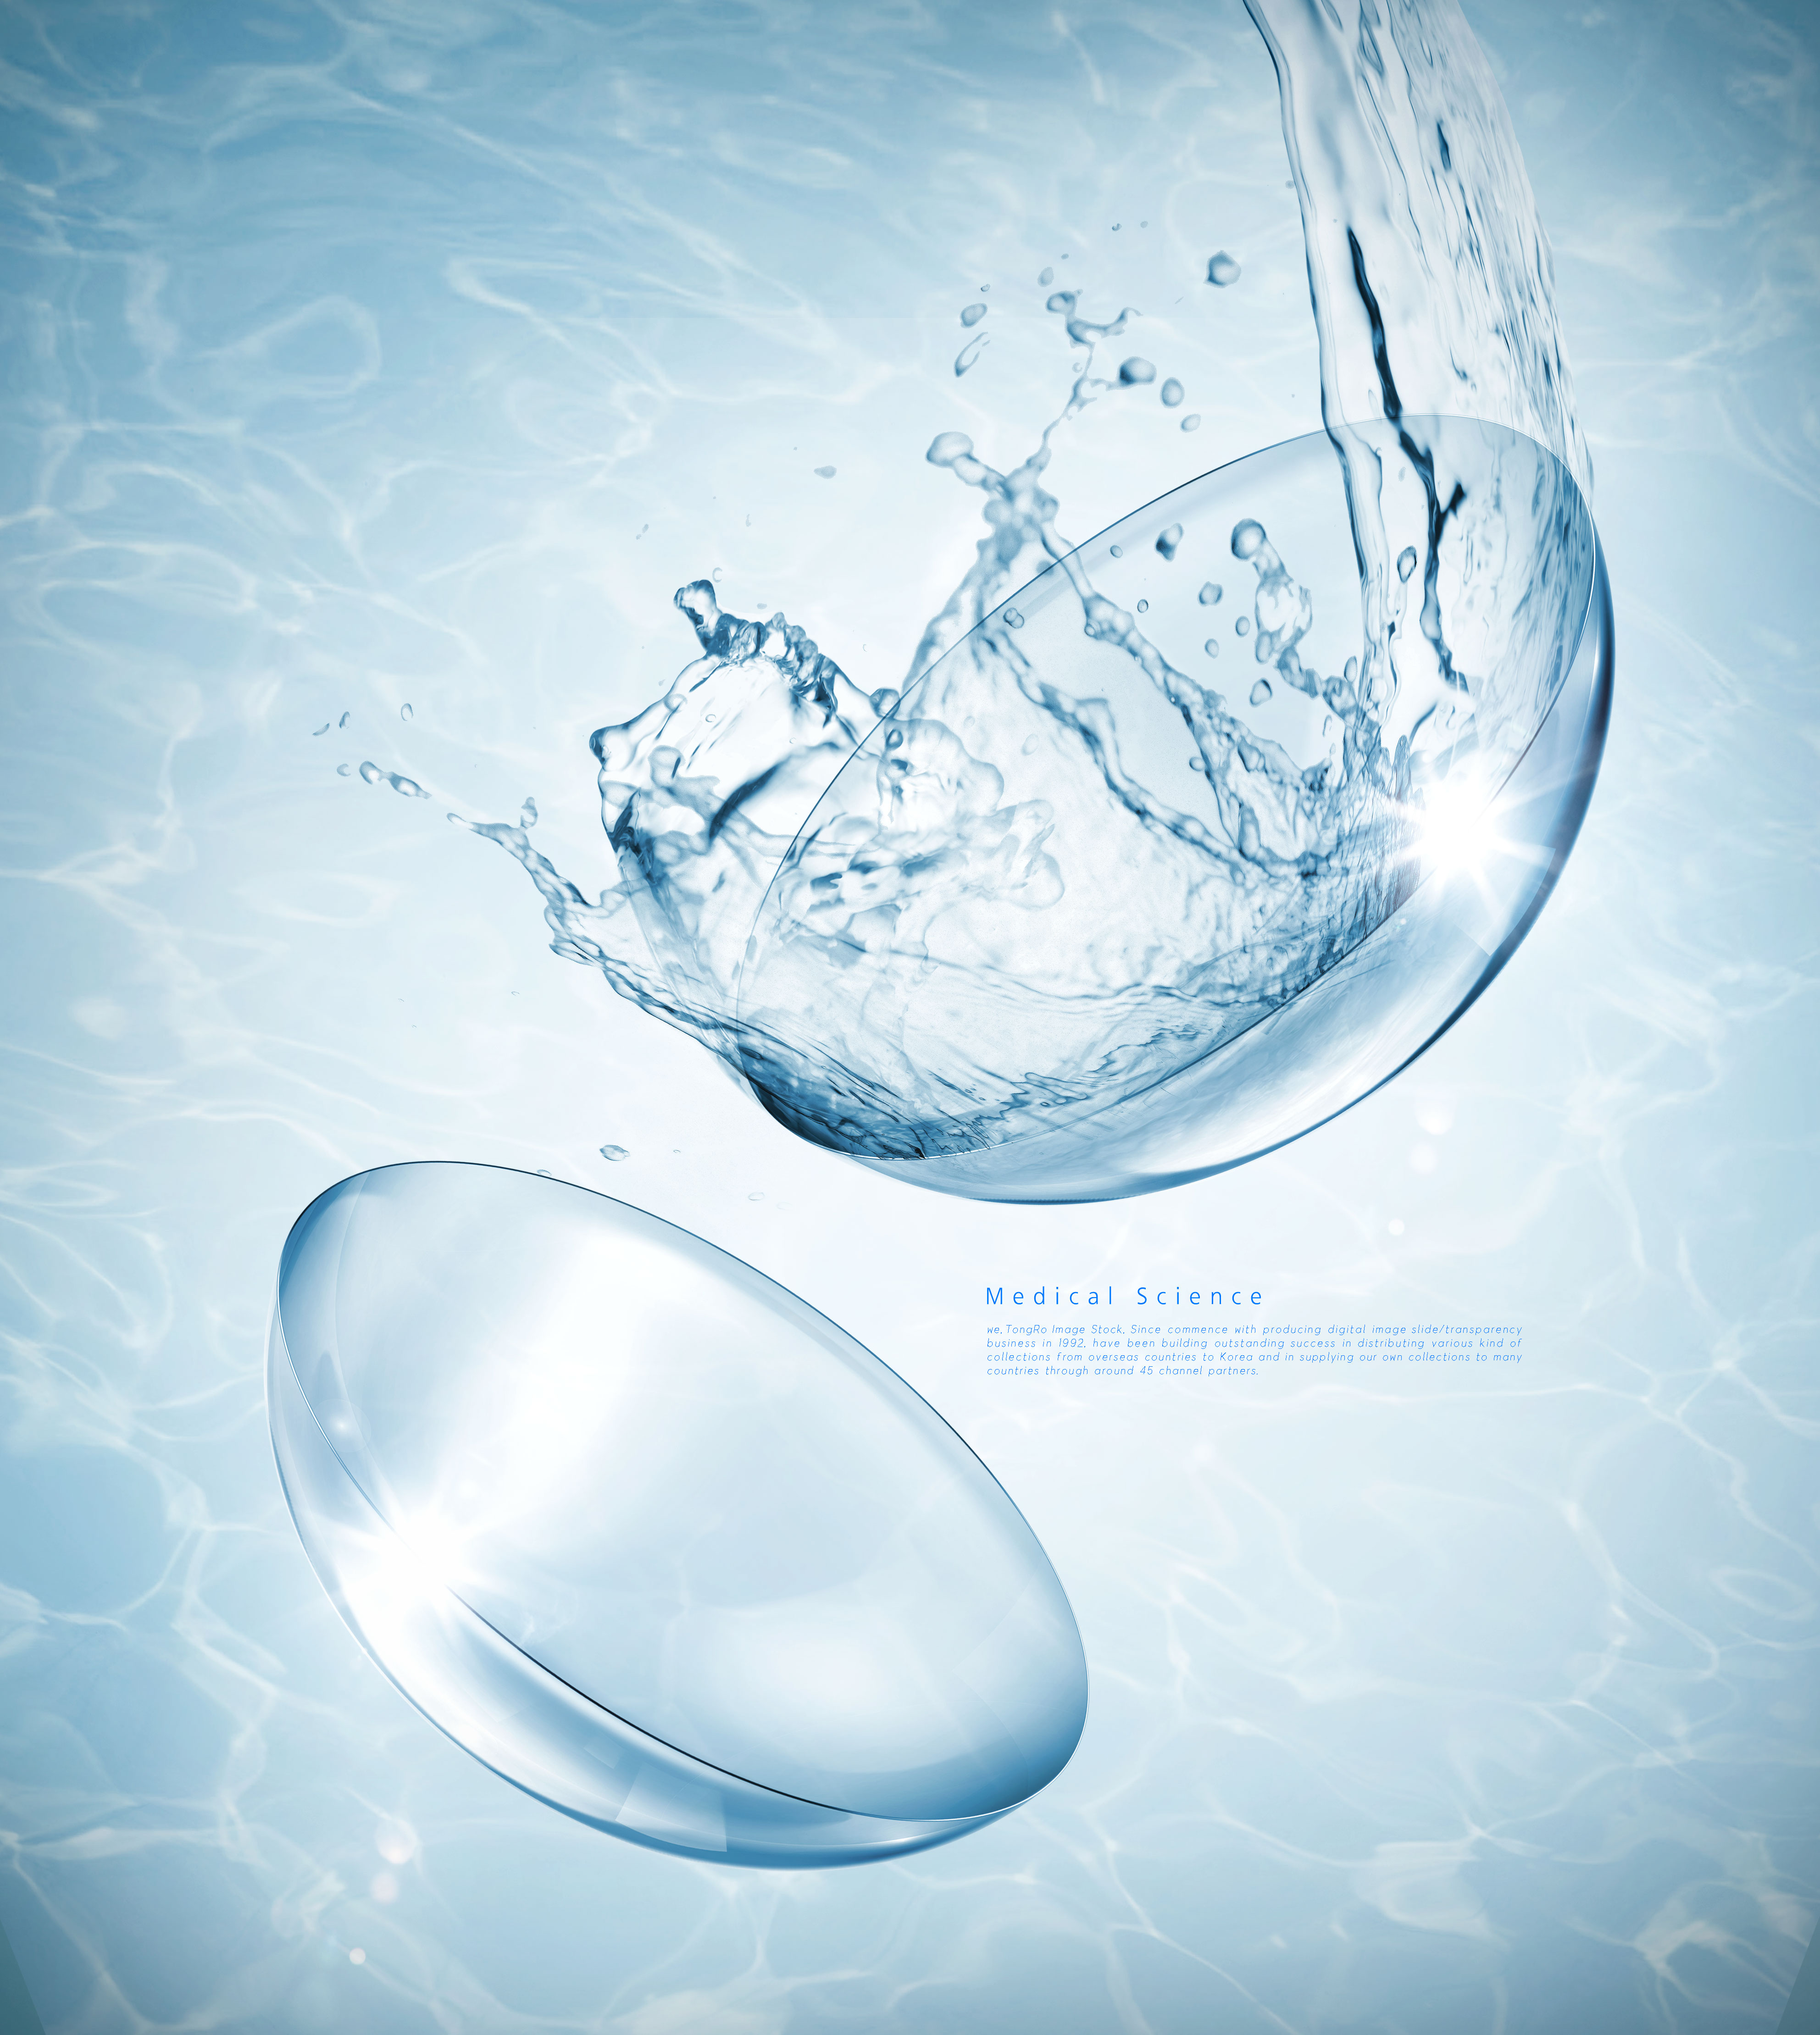 水分子生物科学主题海报设计套装[PSD]插图(4)